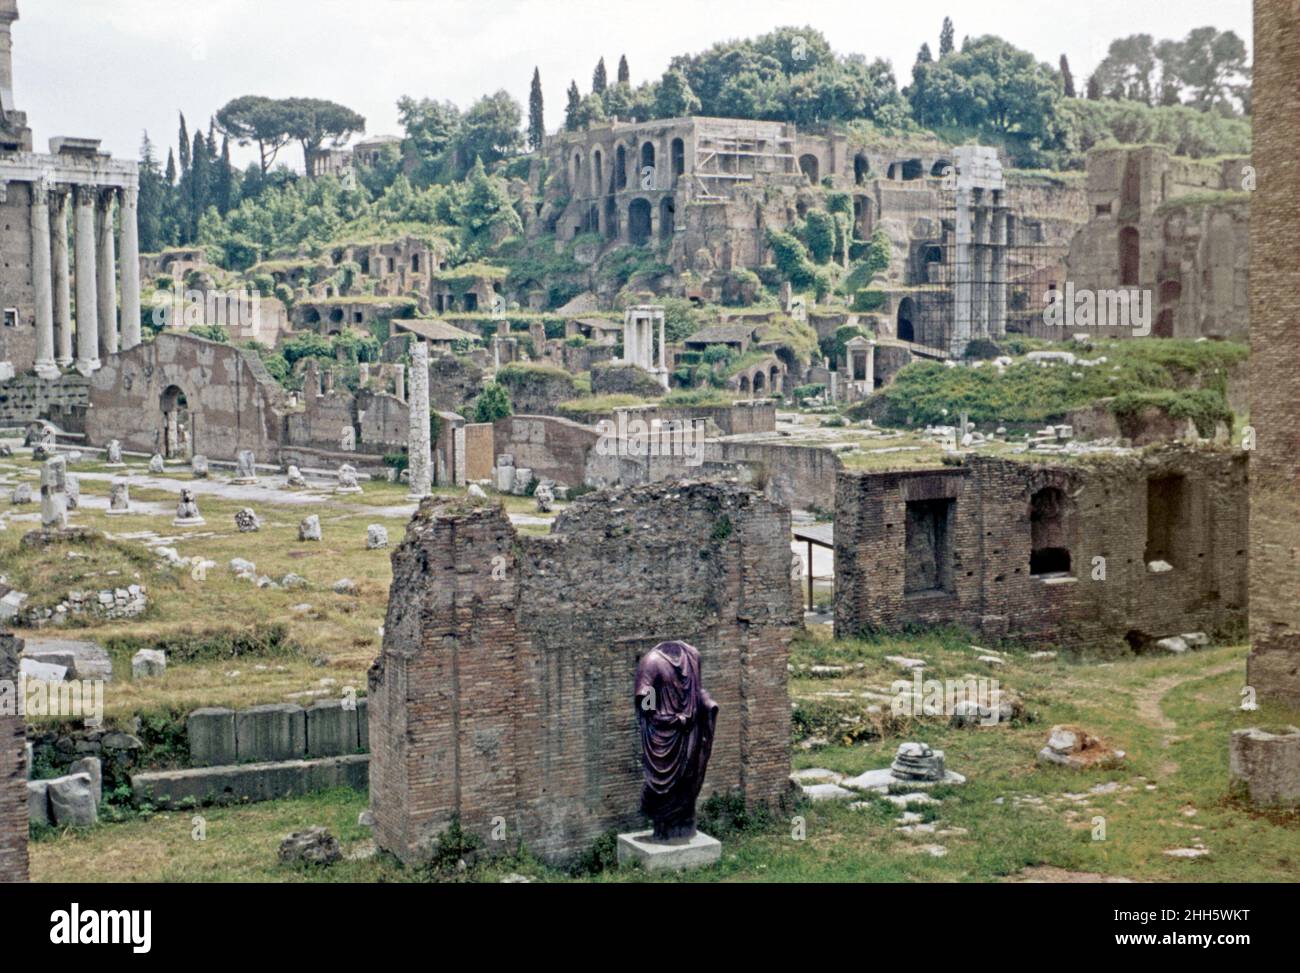 Das Forum Romanum in Rom, Italien um 1960. Diese Ansicht wird von der Curia Julia (Senatshaus) Blick SE genommen. Der Tempel des Divus Julius (Tempio del Divo Giulio) ist links. Heute hat das Forum Schilder, Karten Zäune und glatte Gehwege – da hier war es schwieriger zu gehen und weniger verwaltet und gepflegt. Die Statue im Vordergrund, eine porphyrische Statue, ein Togatus (Mann in einer Toga), befindet sich jetzt im Gebäude der Curia Julia. Das Forum war das Zentrum des täglichen Lebens im alten Rom. Dieses Bild stammt von einem alten Amateur 35mm Farbtransparenz – ein Vintage 1950/60s Foto. Stockfoto